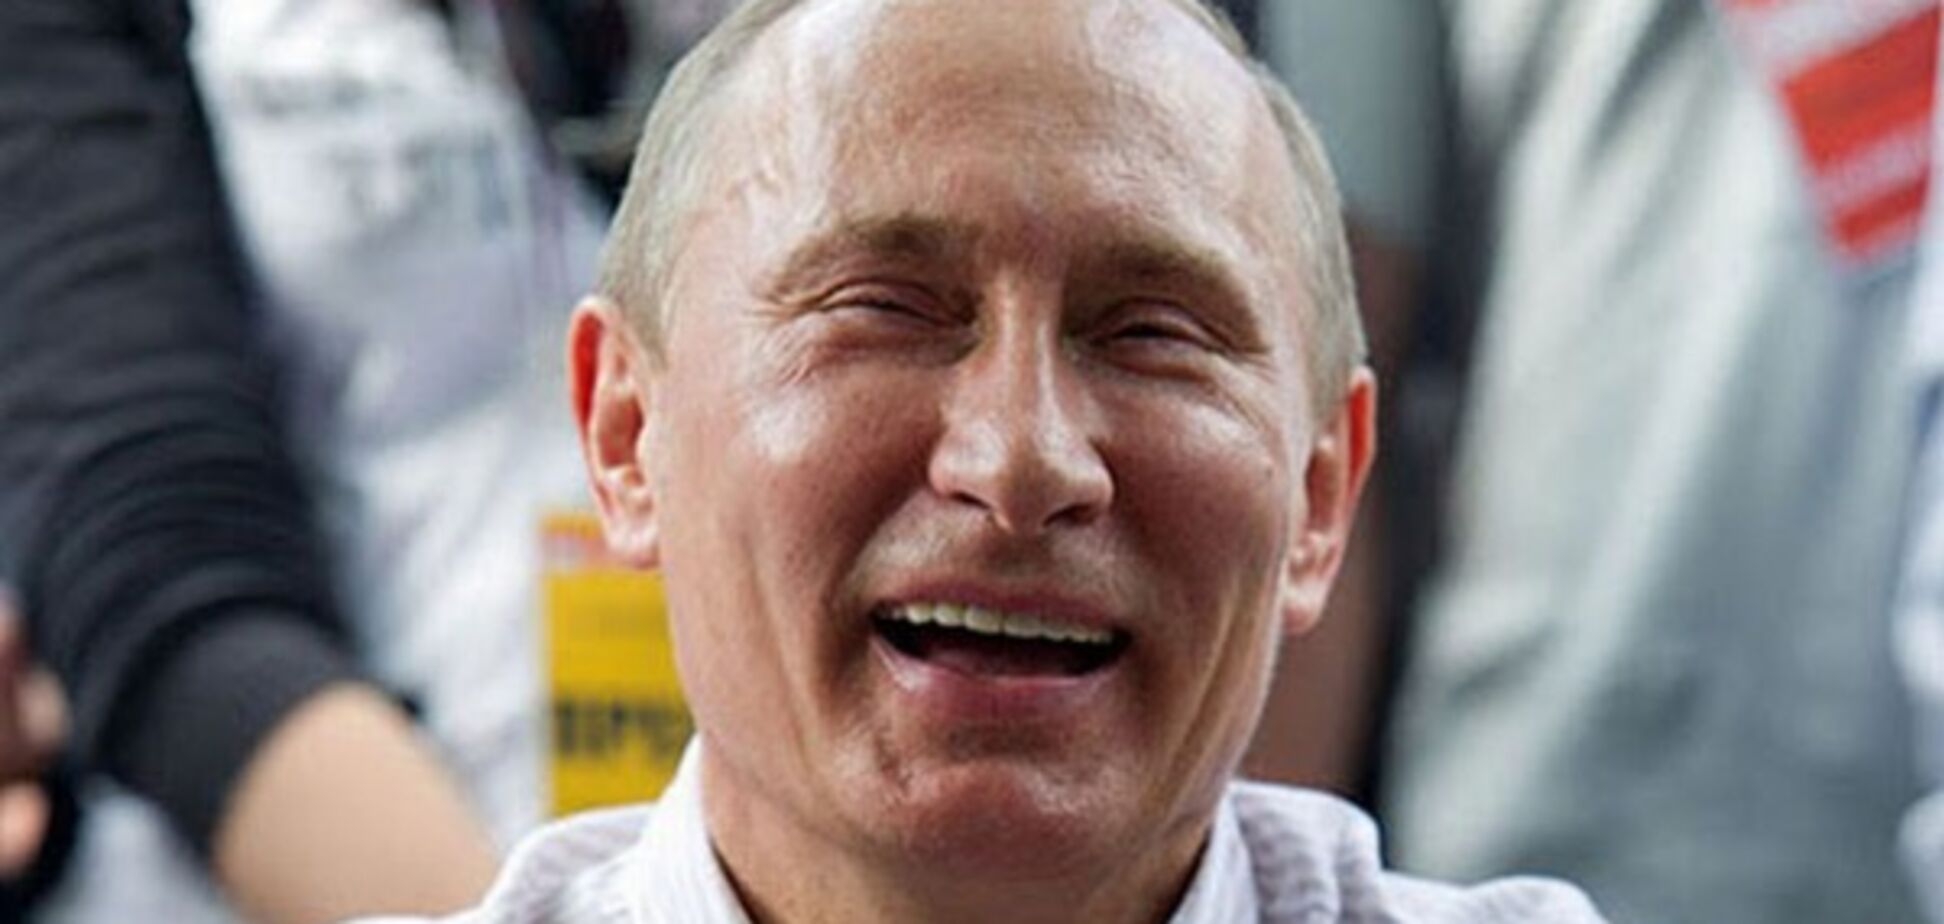 'Сами разбирайтесь': Путин нахамил британскому журналисту за вопрос об отравлении Скрипаля 